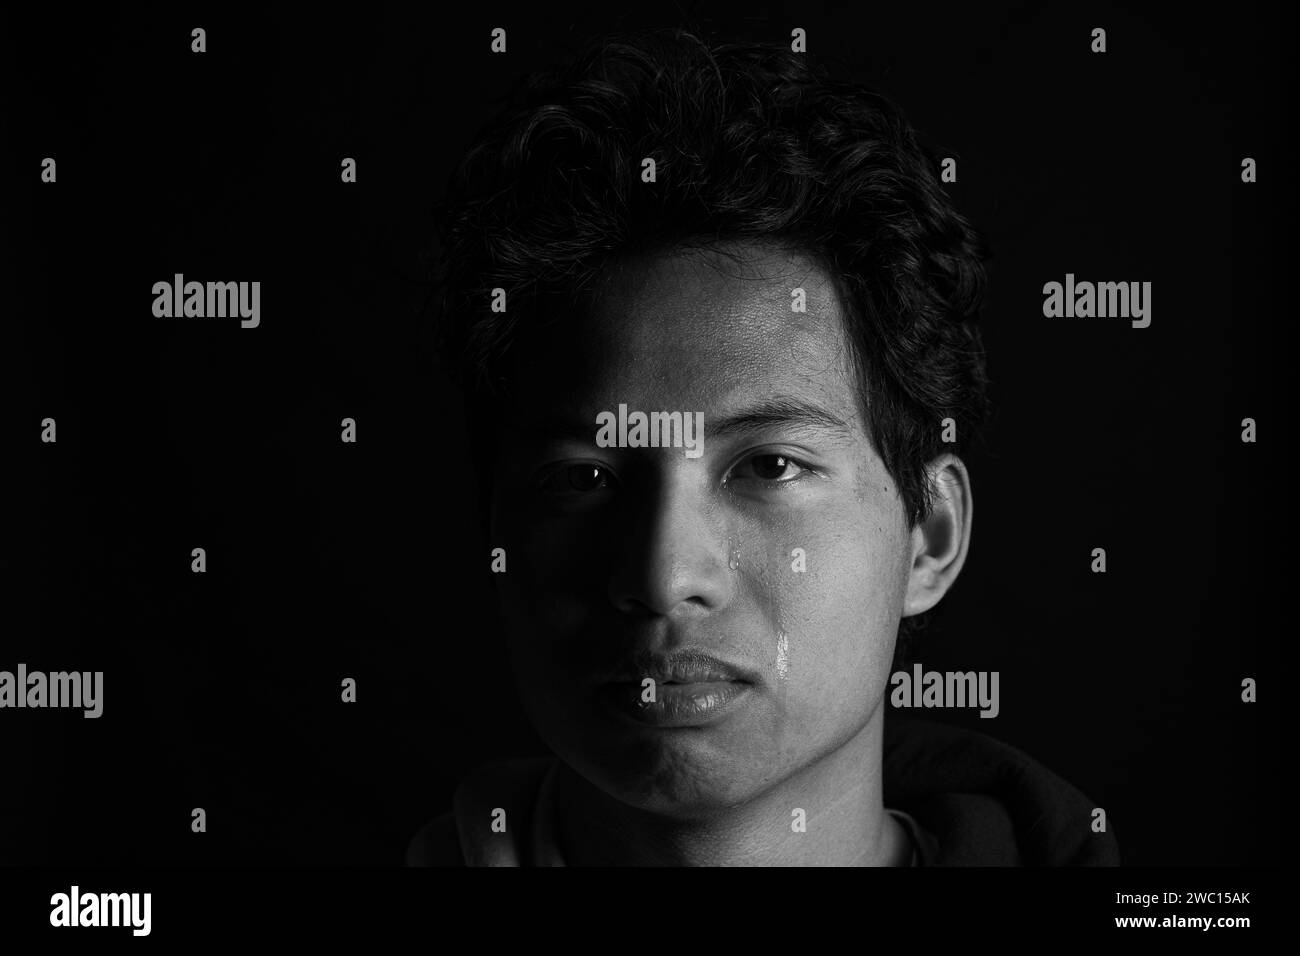 Un ritratto ravvicinato di un uomo con lacrime sul viso su sfondo scuro in scala di grigi Foto Stock